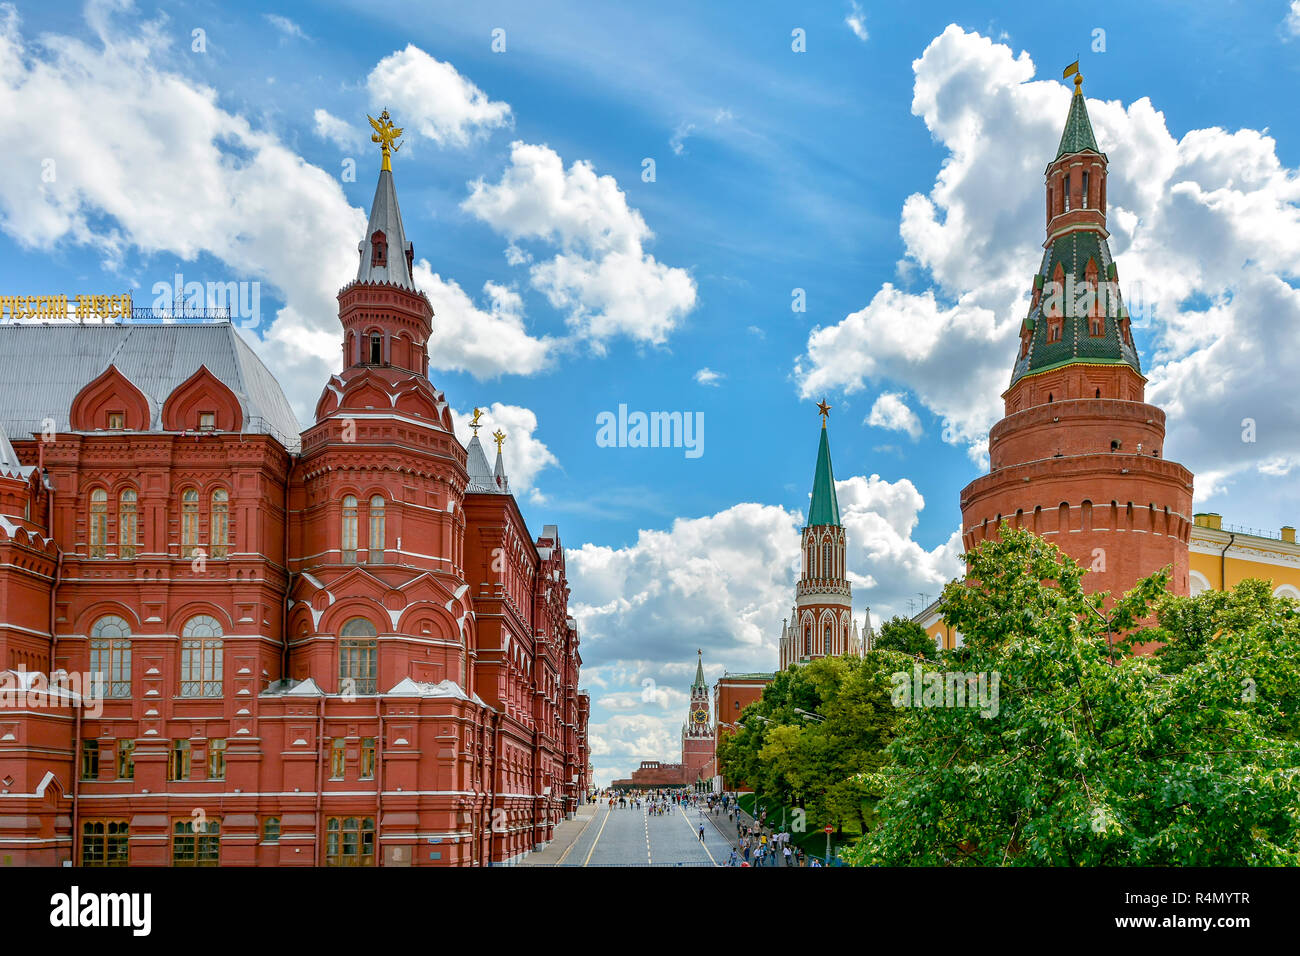 Ingresso alla vecchia e famosa Piazza Rossa di Mosca con la sua architettura caratteristica, torri e mattoni Foto Stock